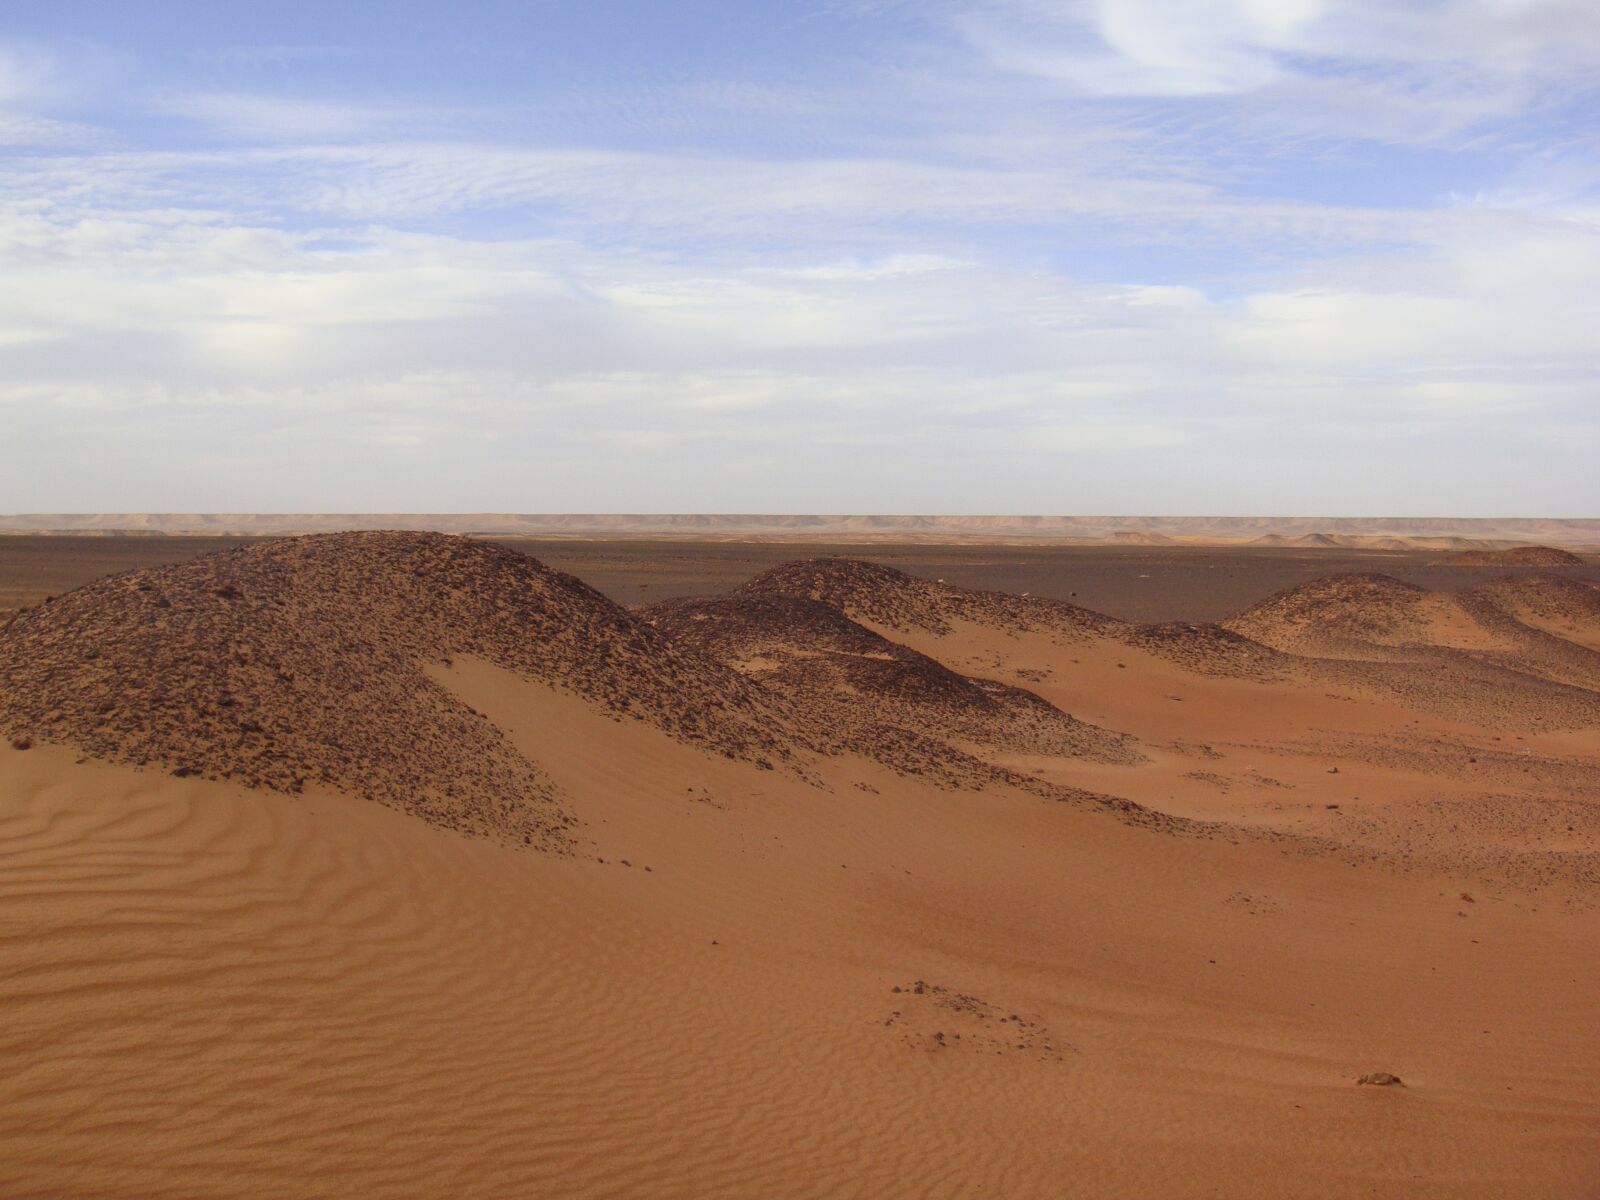 Sony DSC-T700 sample photo. Desert, sand, dunes photography